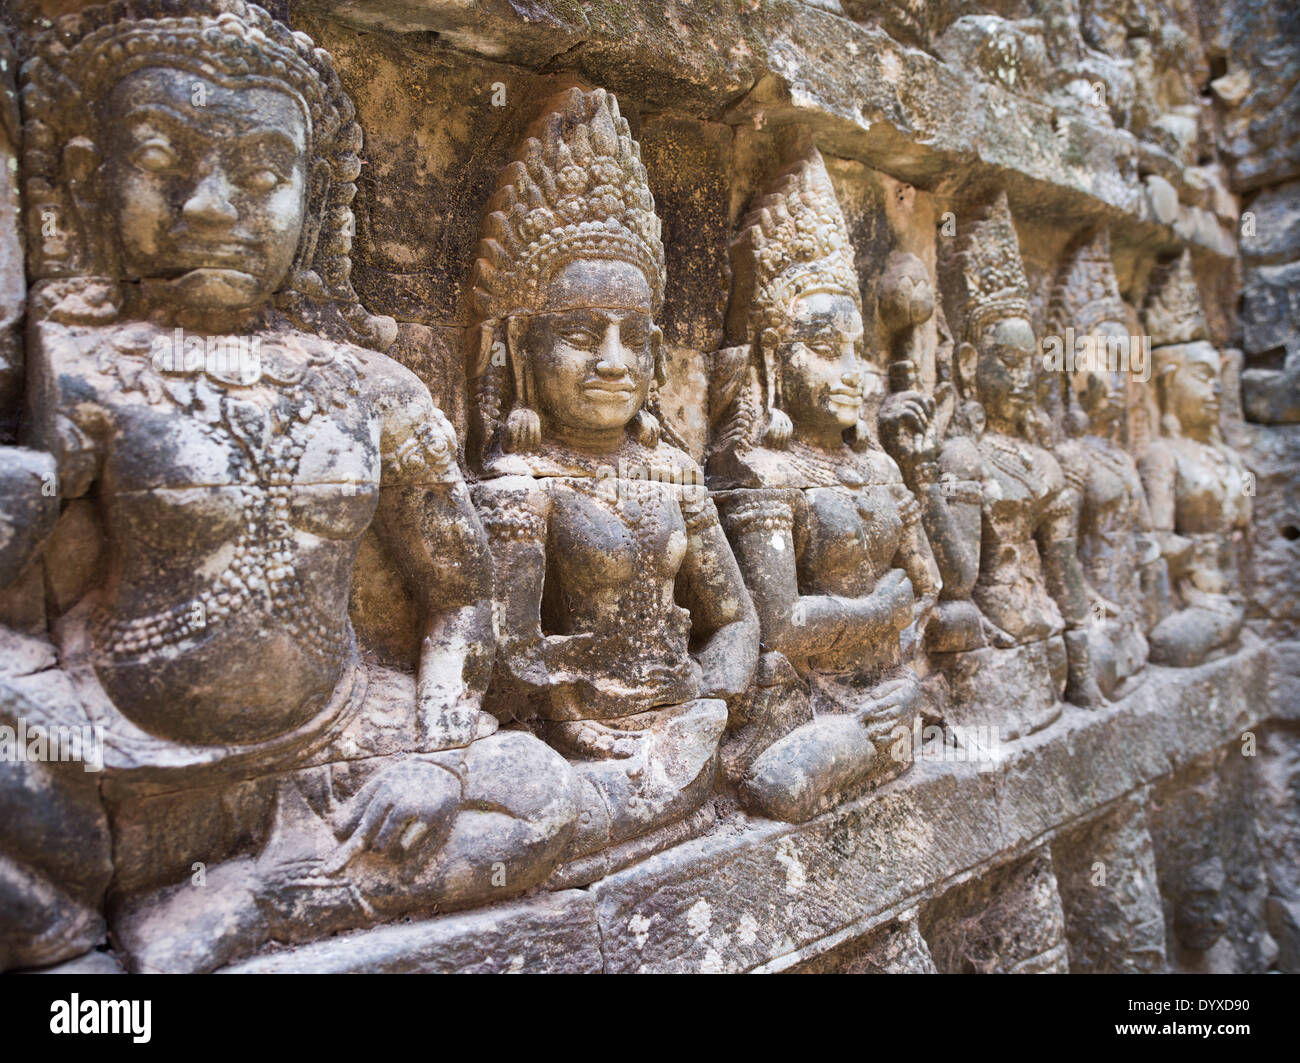 Sculture in pietra arenaria di figure divine alla terrazza del Lebbroso re all'interno di Angkor Thom, Siem Reap, Cambogia Foto Stock